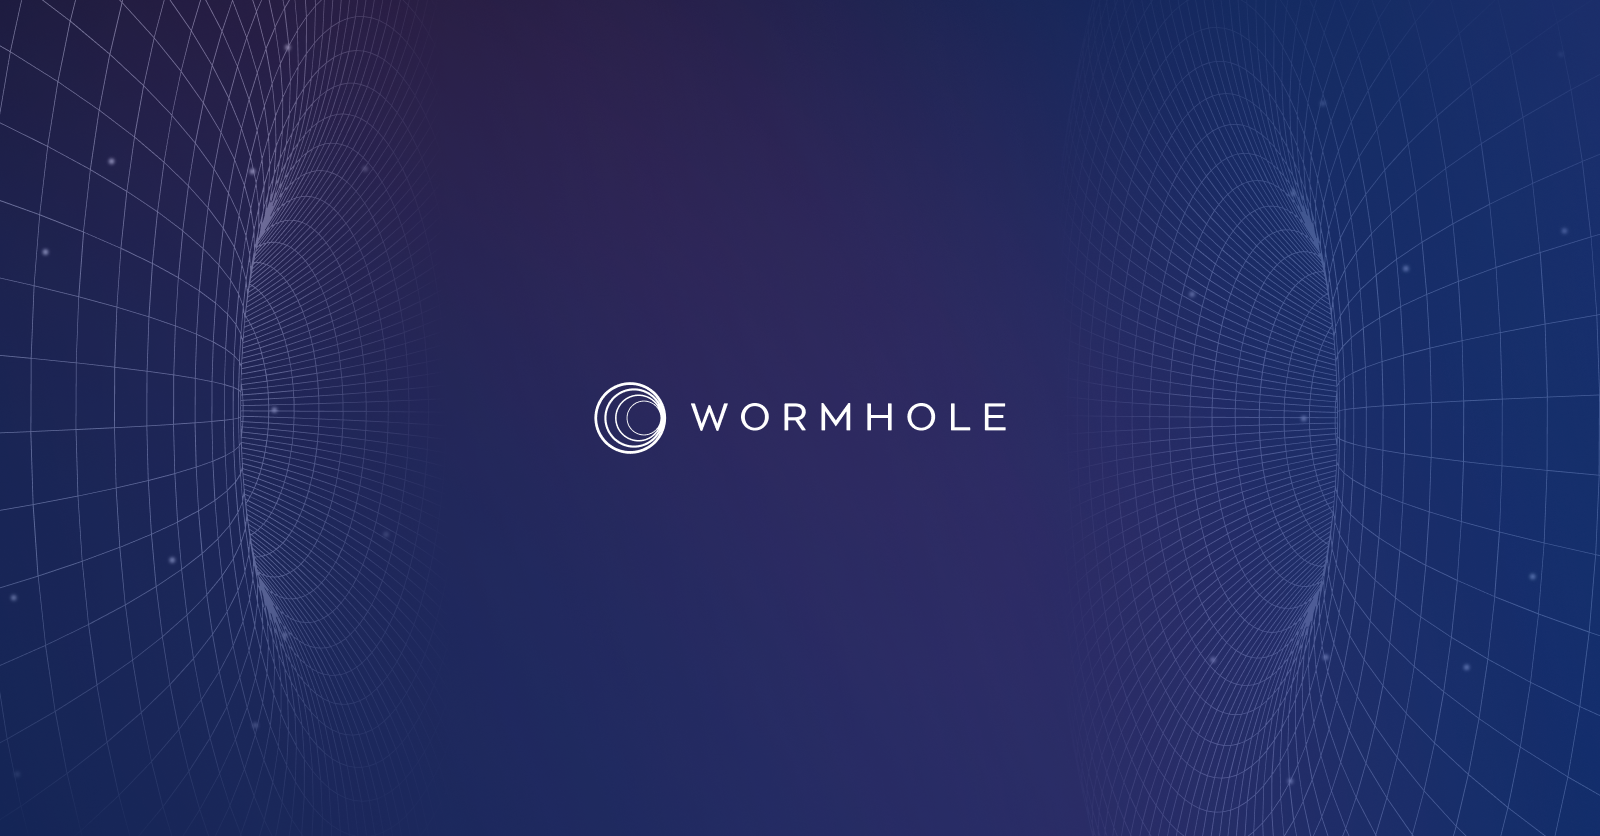 wormhole-image-logo